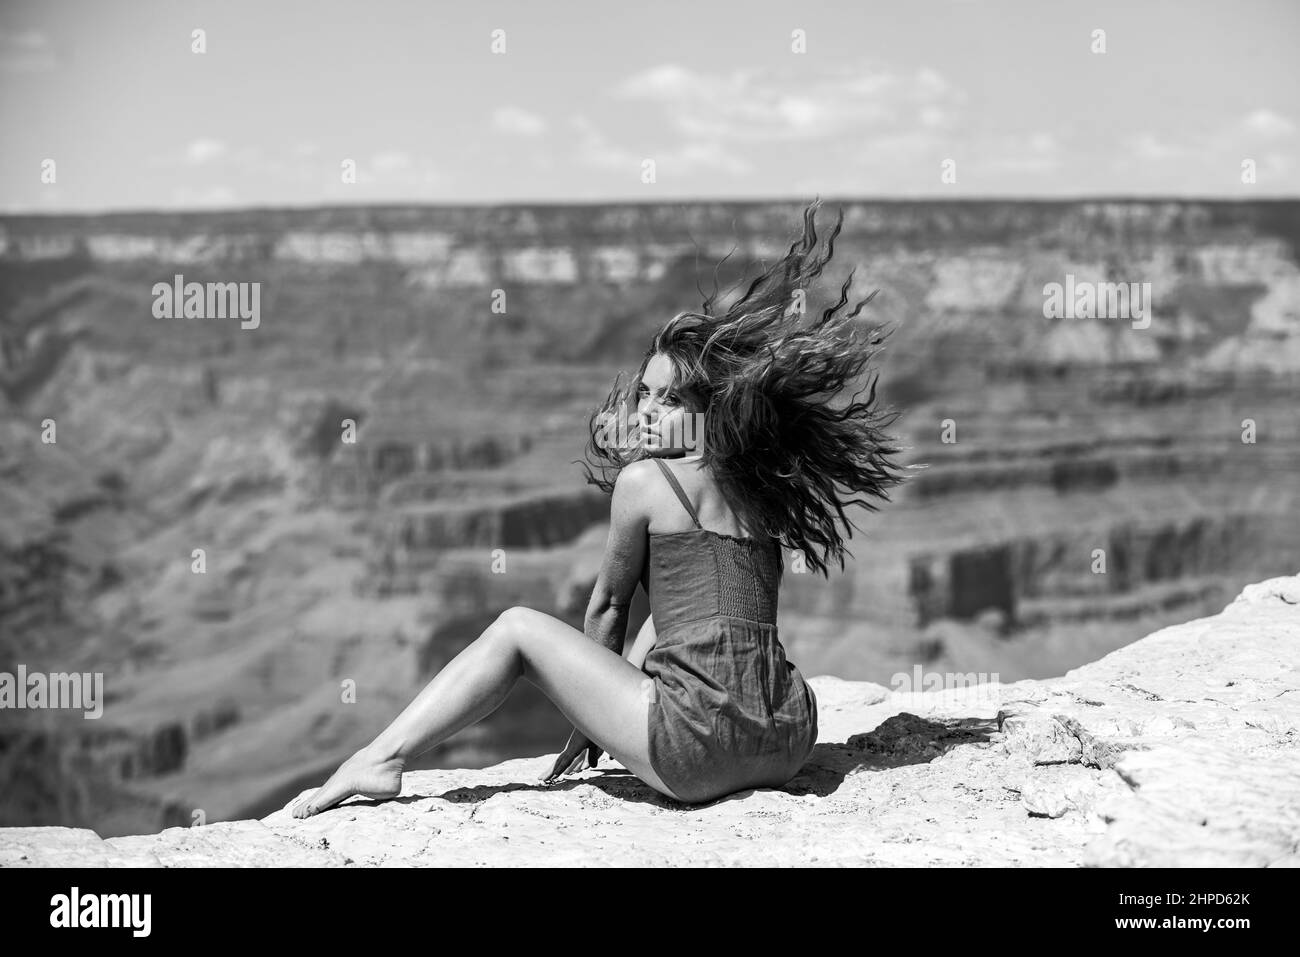 Reise- und Abenteuerkonzept. Elegante Frau auf Grand Canyon. Junge Frau mit szenischer dramatischer Aussicht auf den amerikanischen Nationalpark. Stockfoto